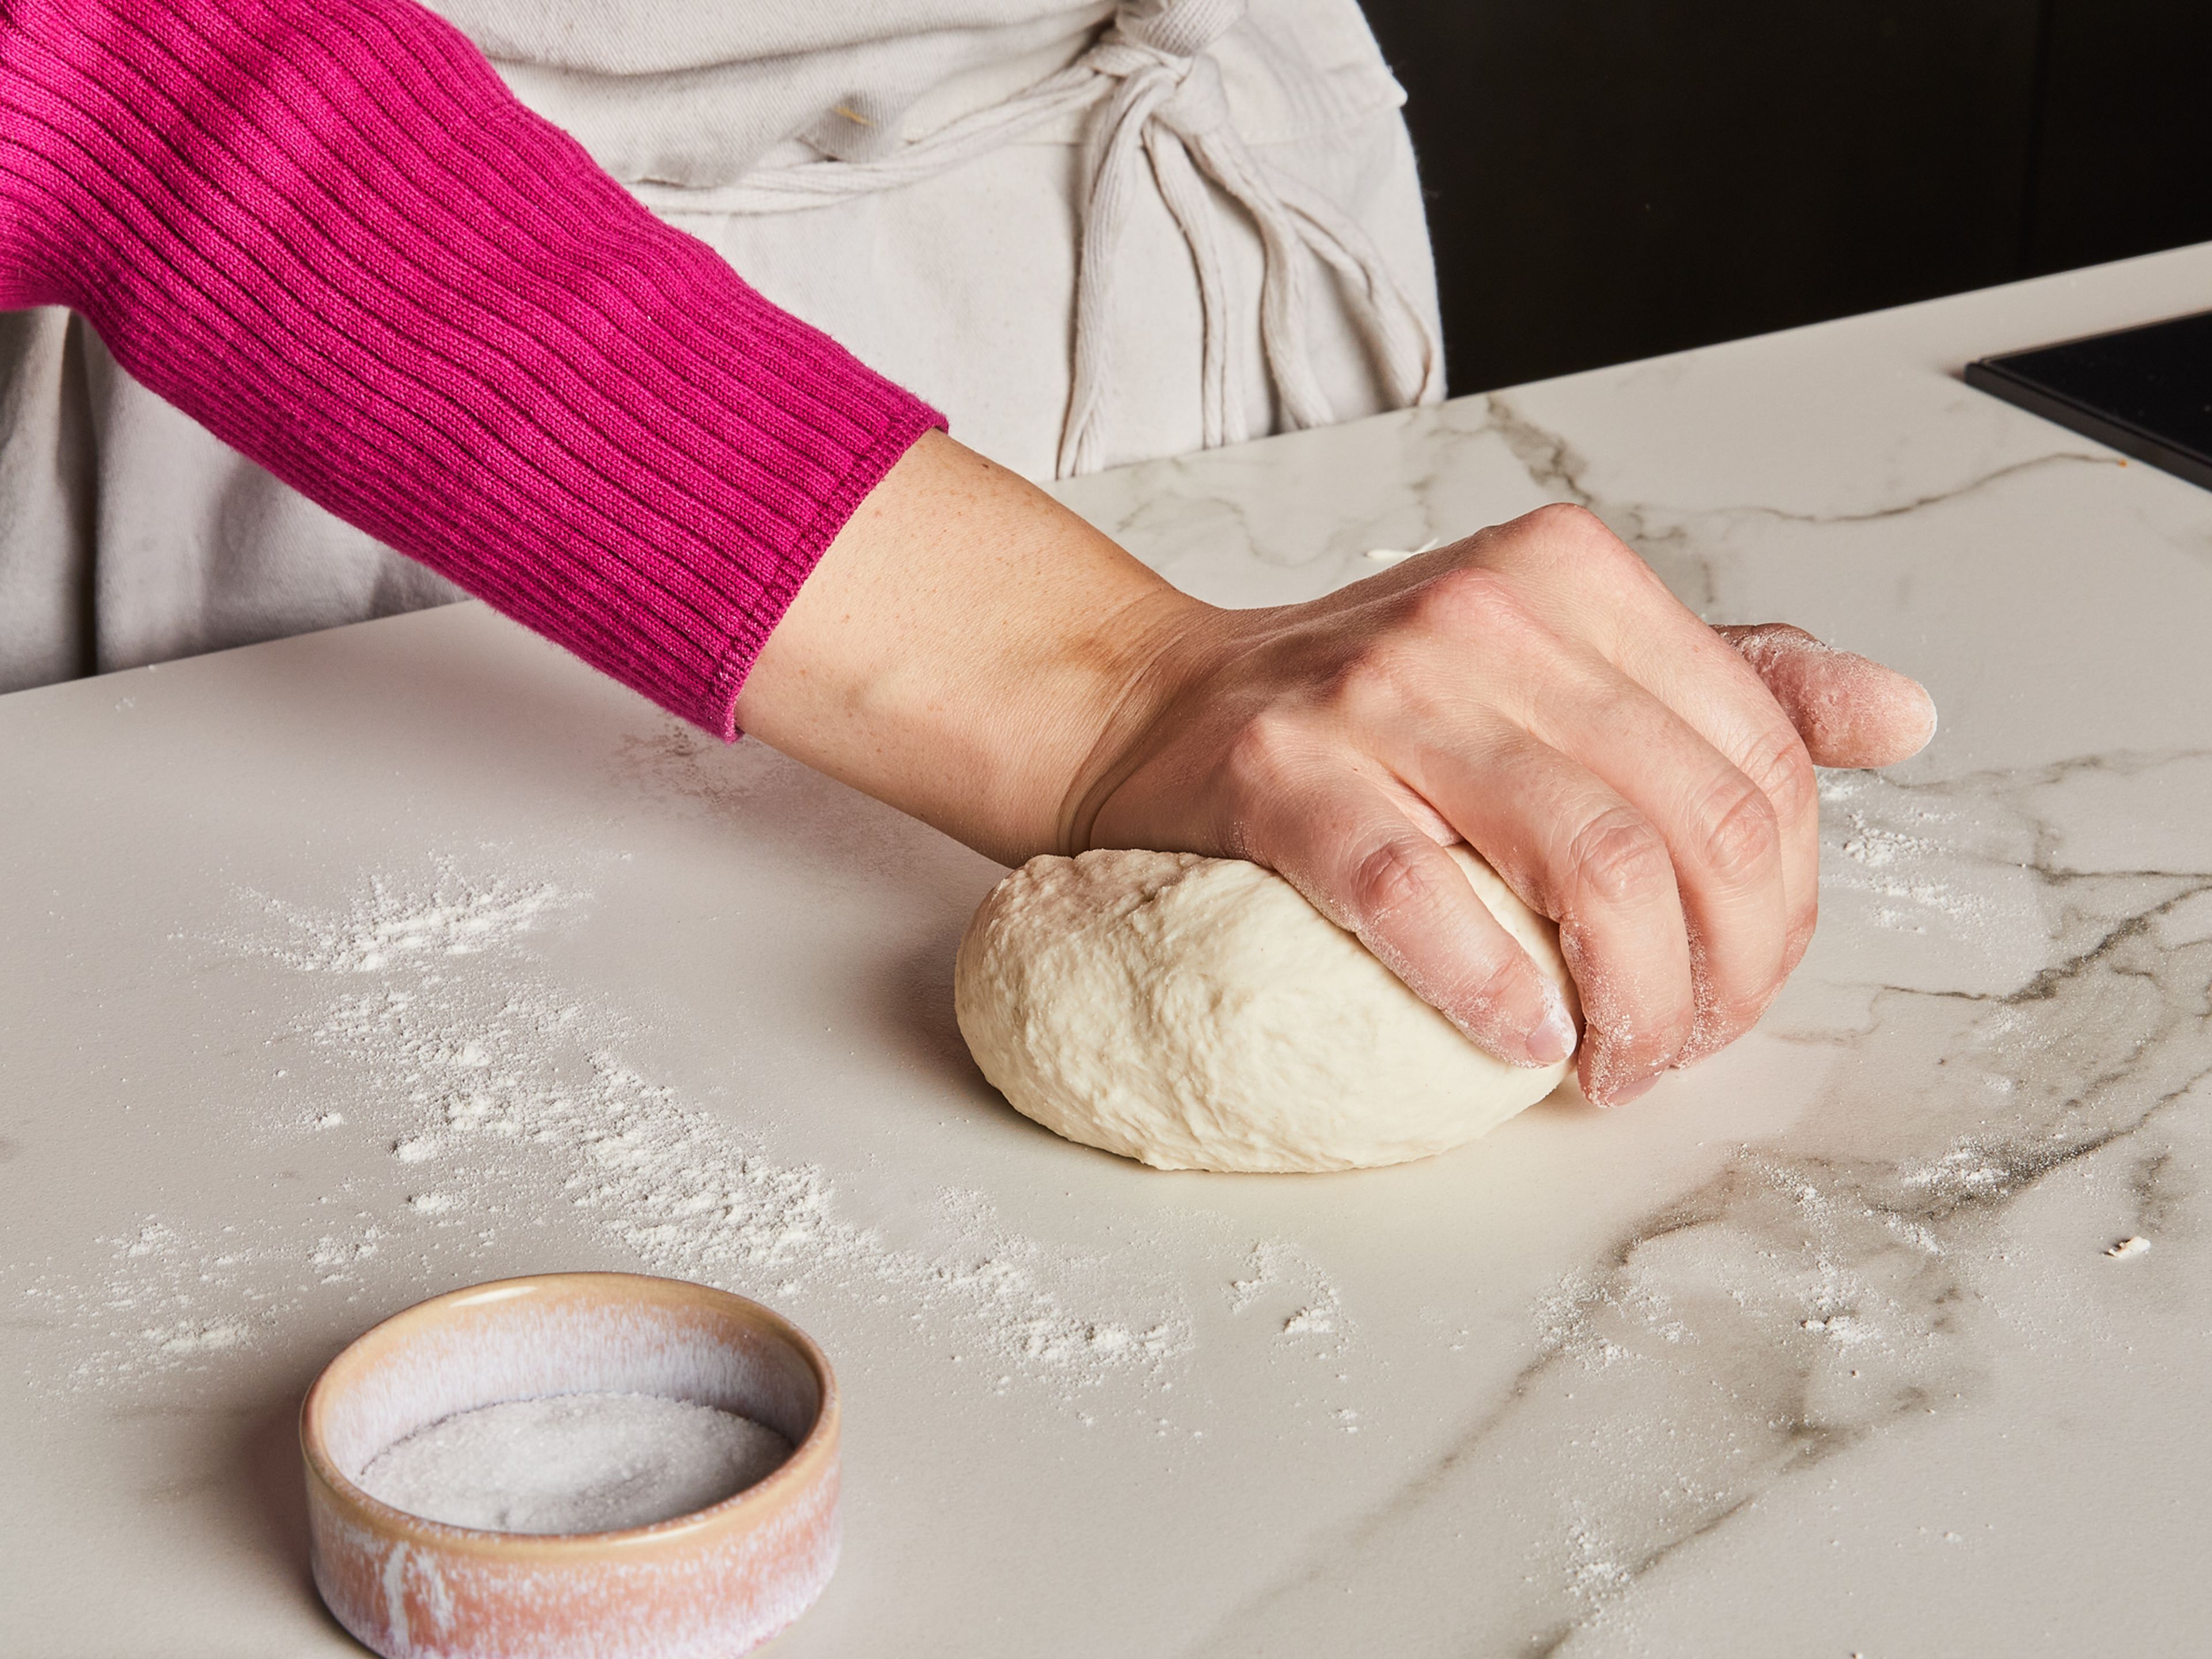 Mehl mit Salz mischen, einen Teil des Wasser hinzugeben und mit einem Holzlöffel verrühren, bis ein krümeliger Teig entsteht. Mit den Händen ca. 2 Min. kneten, bis der Teig geschmeidig ist. Zu einer Kugel formen, mit einem Küchenhandtuch abdecken und für mindestens 20 Min. ruhen lassen.